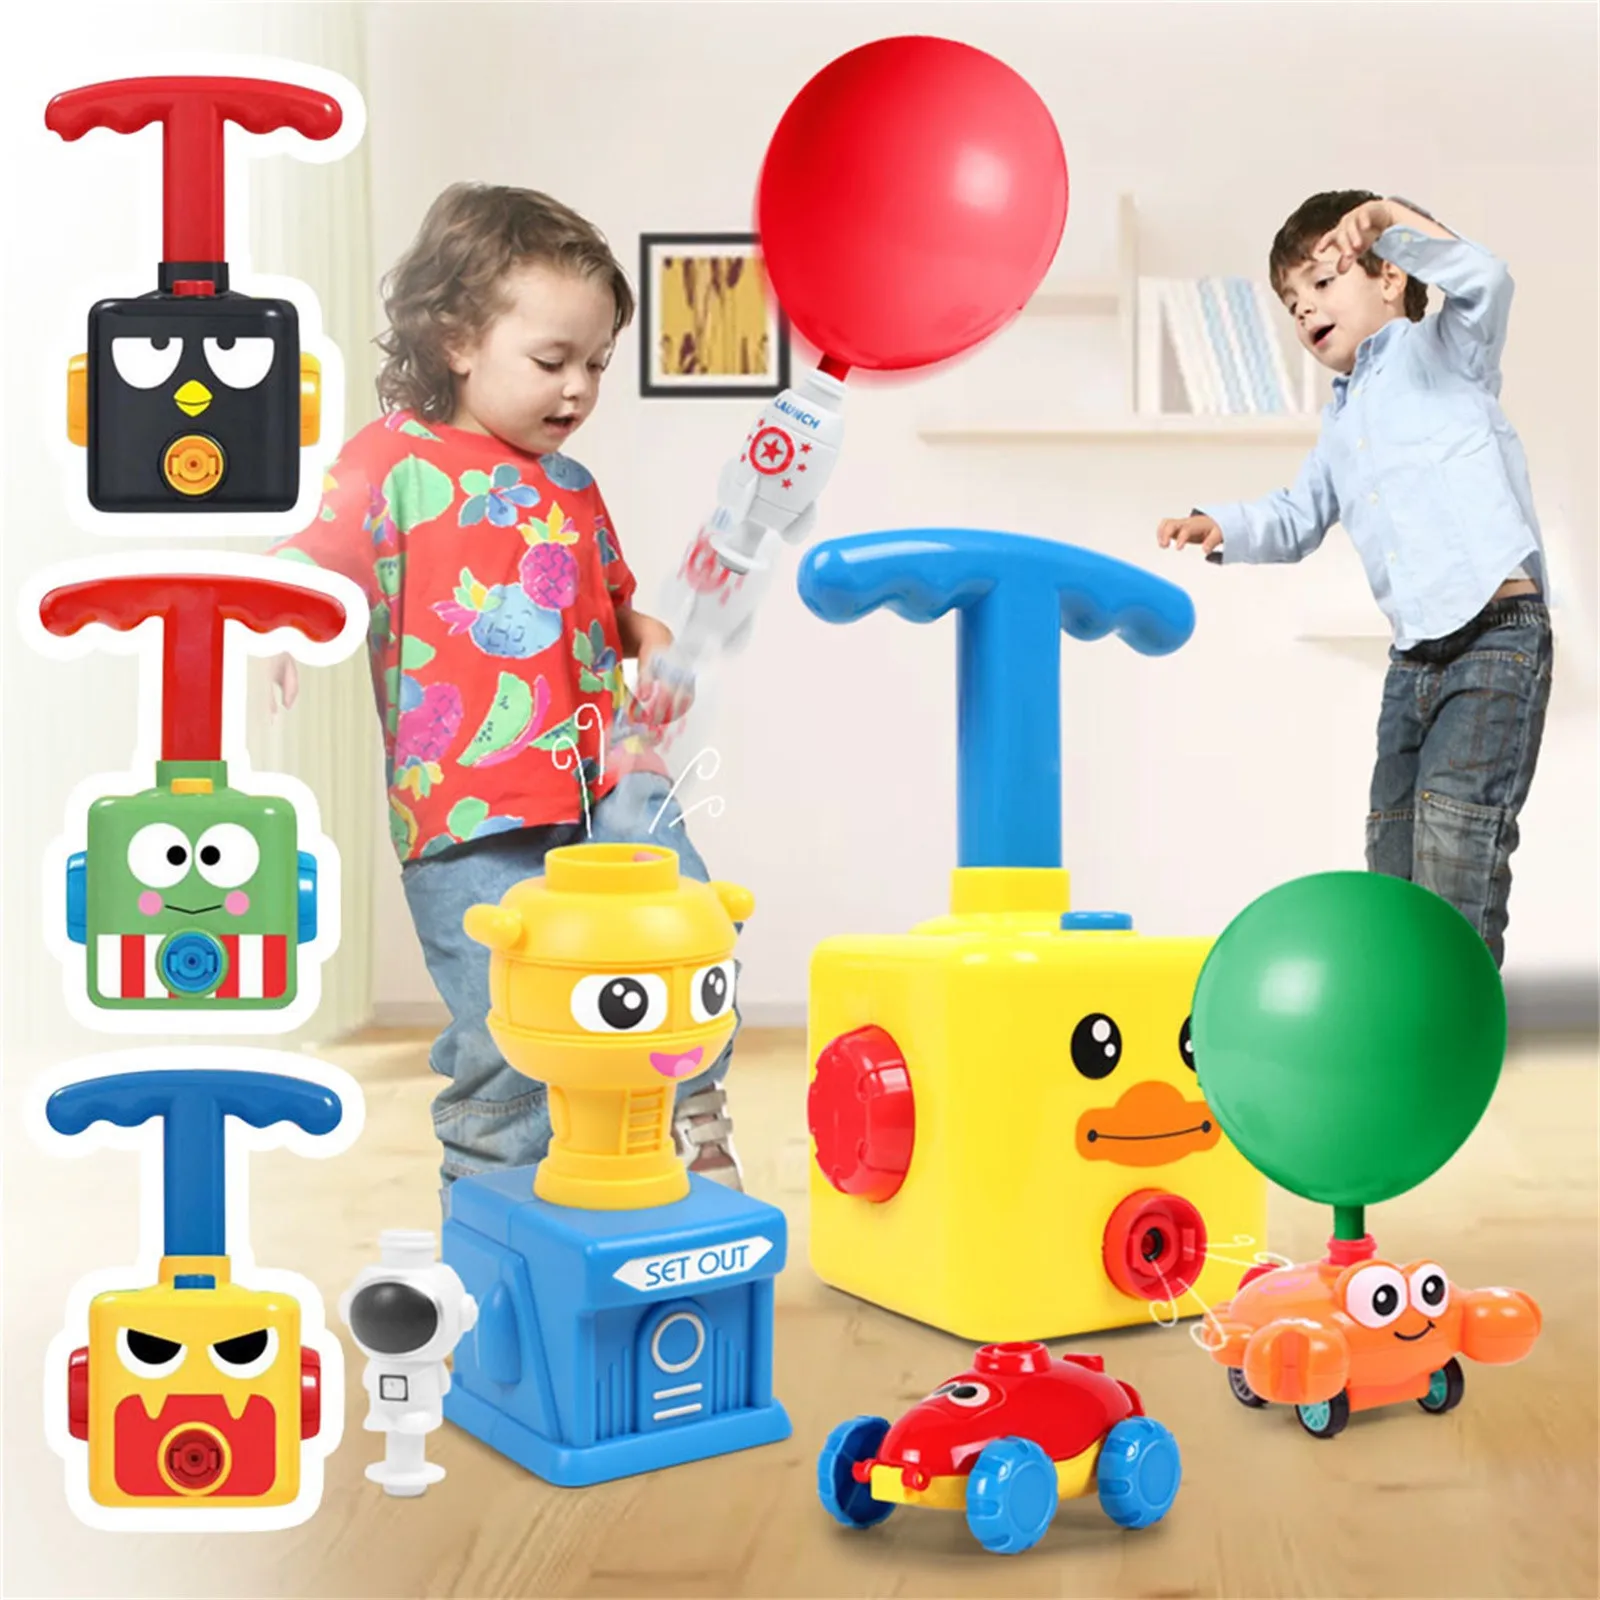 

Научная экспериментальная игрушка для детей, подарок, новый мощный воздушный шар, башня, игрушка, головоломка, забавное обучение, инерционн...